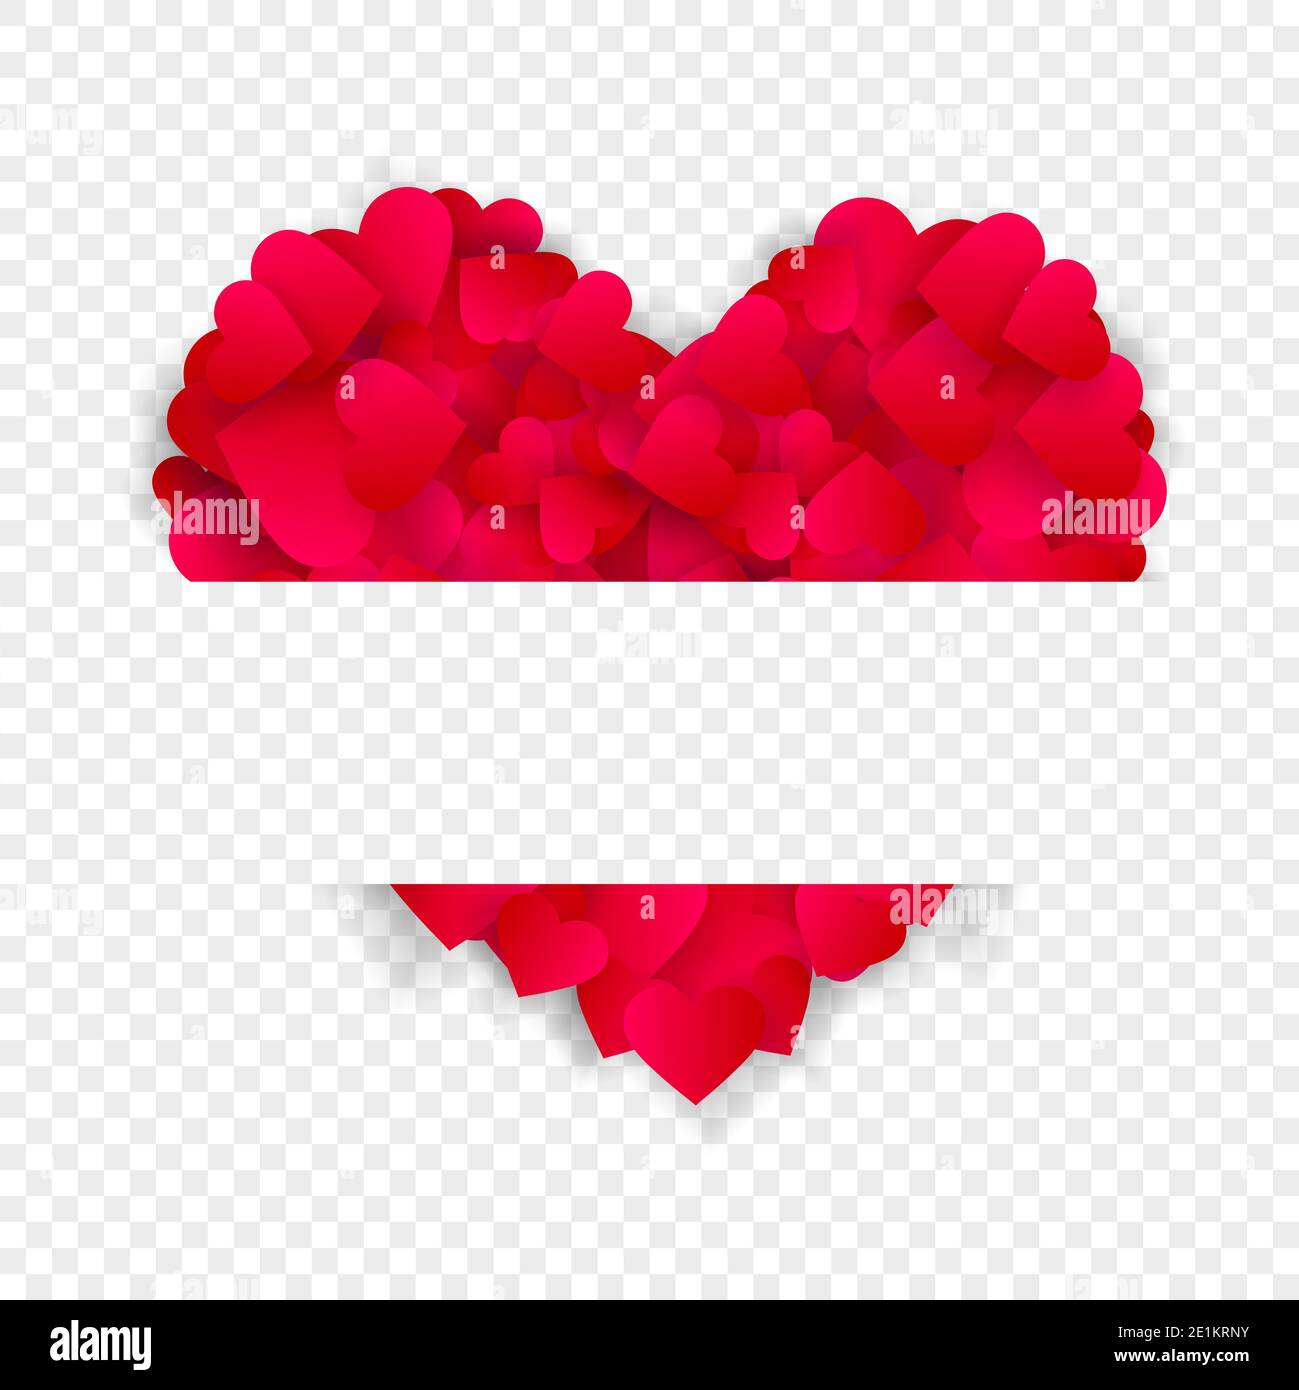 Herz Rahmen Vektor Liebe Grenze Hintergrund mit großen roten Herzen aus Konfetti oder Blütenblätter mit horizontalen Kopierraum isoliert auf transparentem Hintergrund. Stockfoto